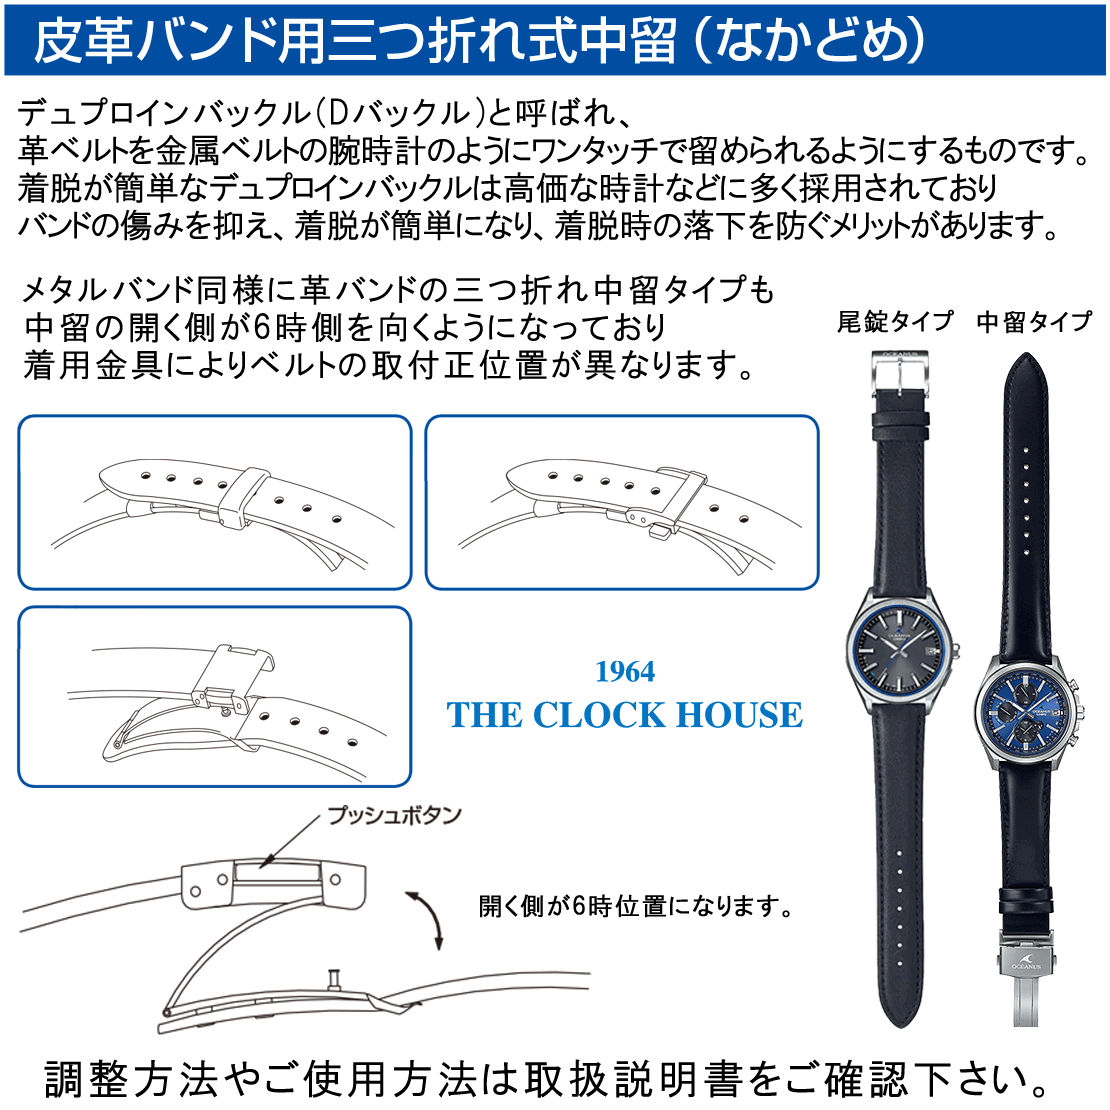 グランドセイコー クオーツ 9F メンズ 腕時計 SBGX331 革ベルト クロコダイル ペアモデル